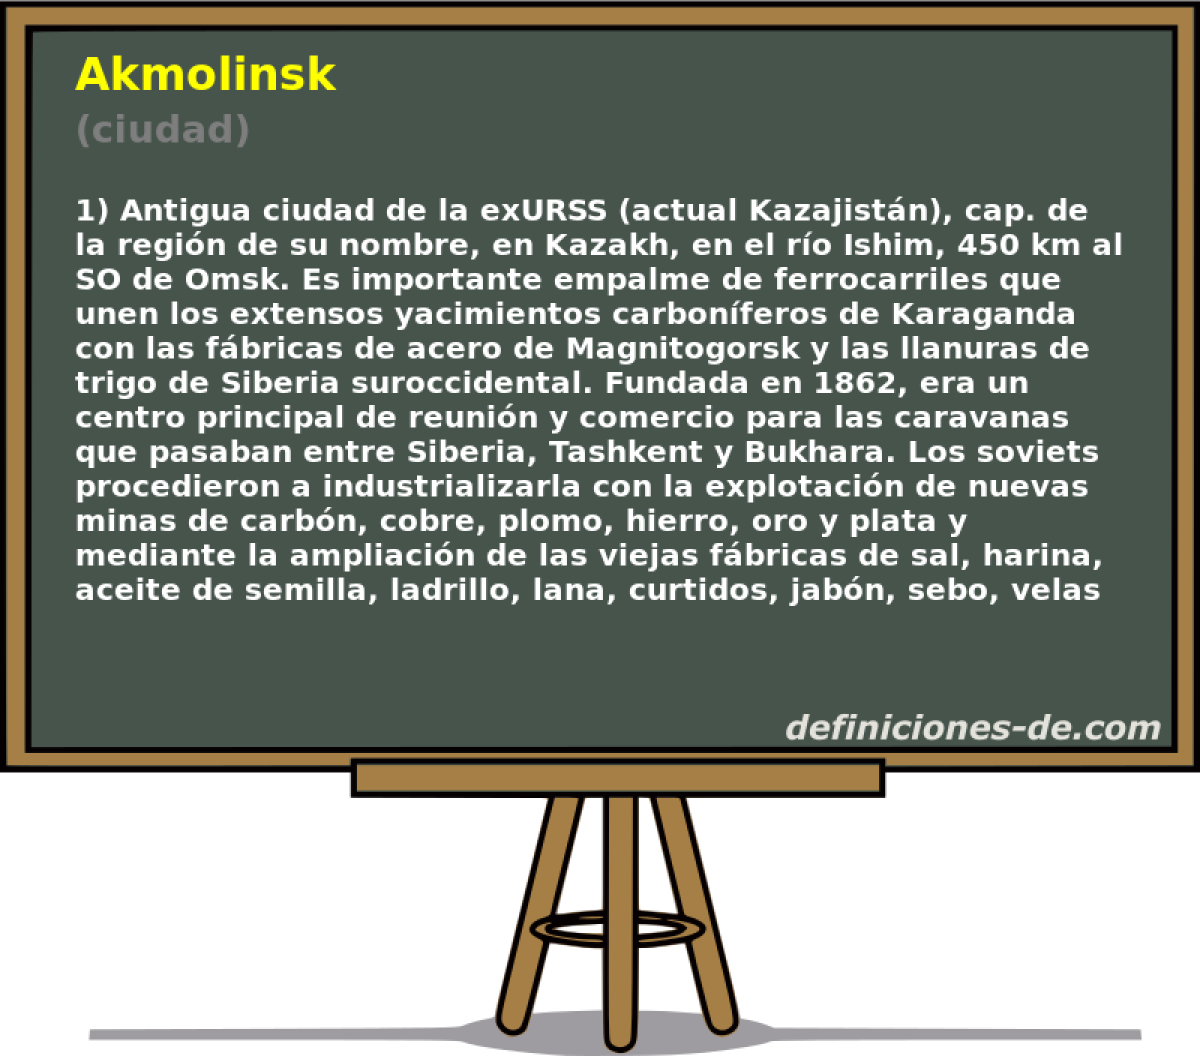 Akmolinsk (ciudad)